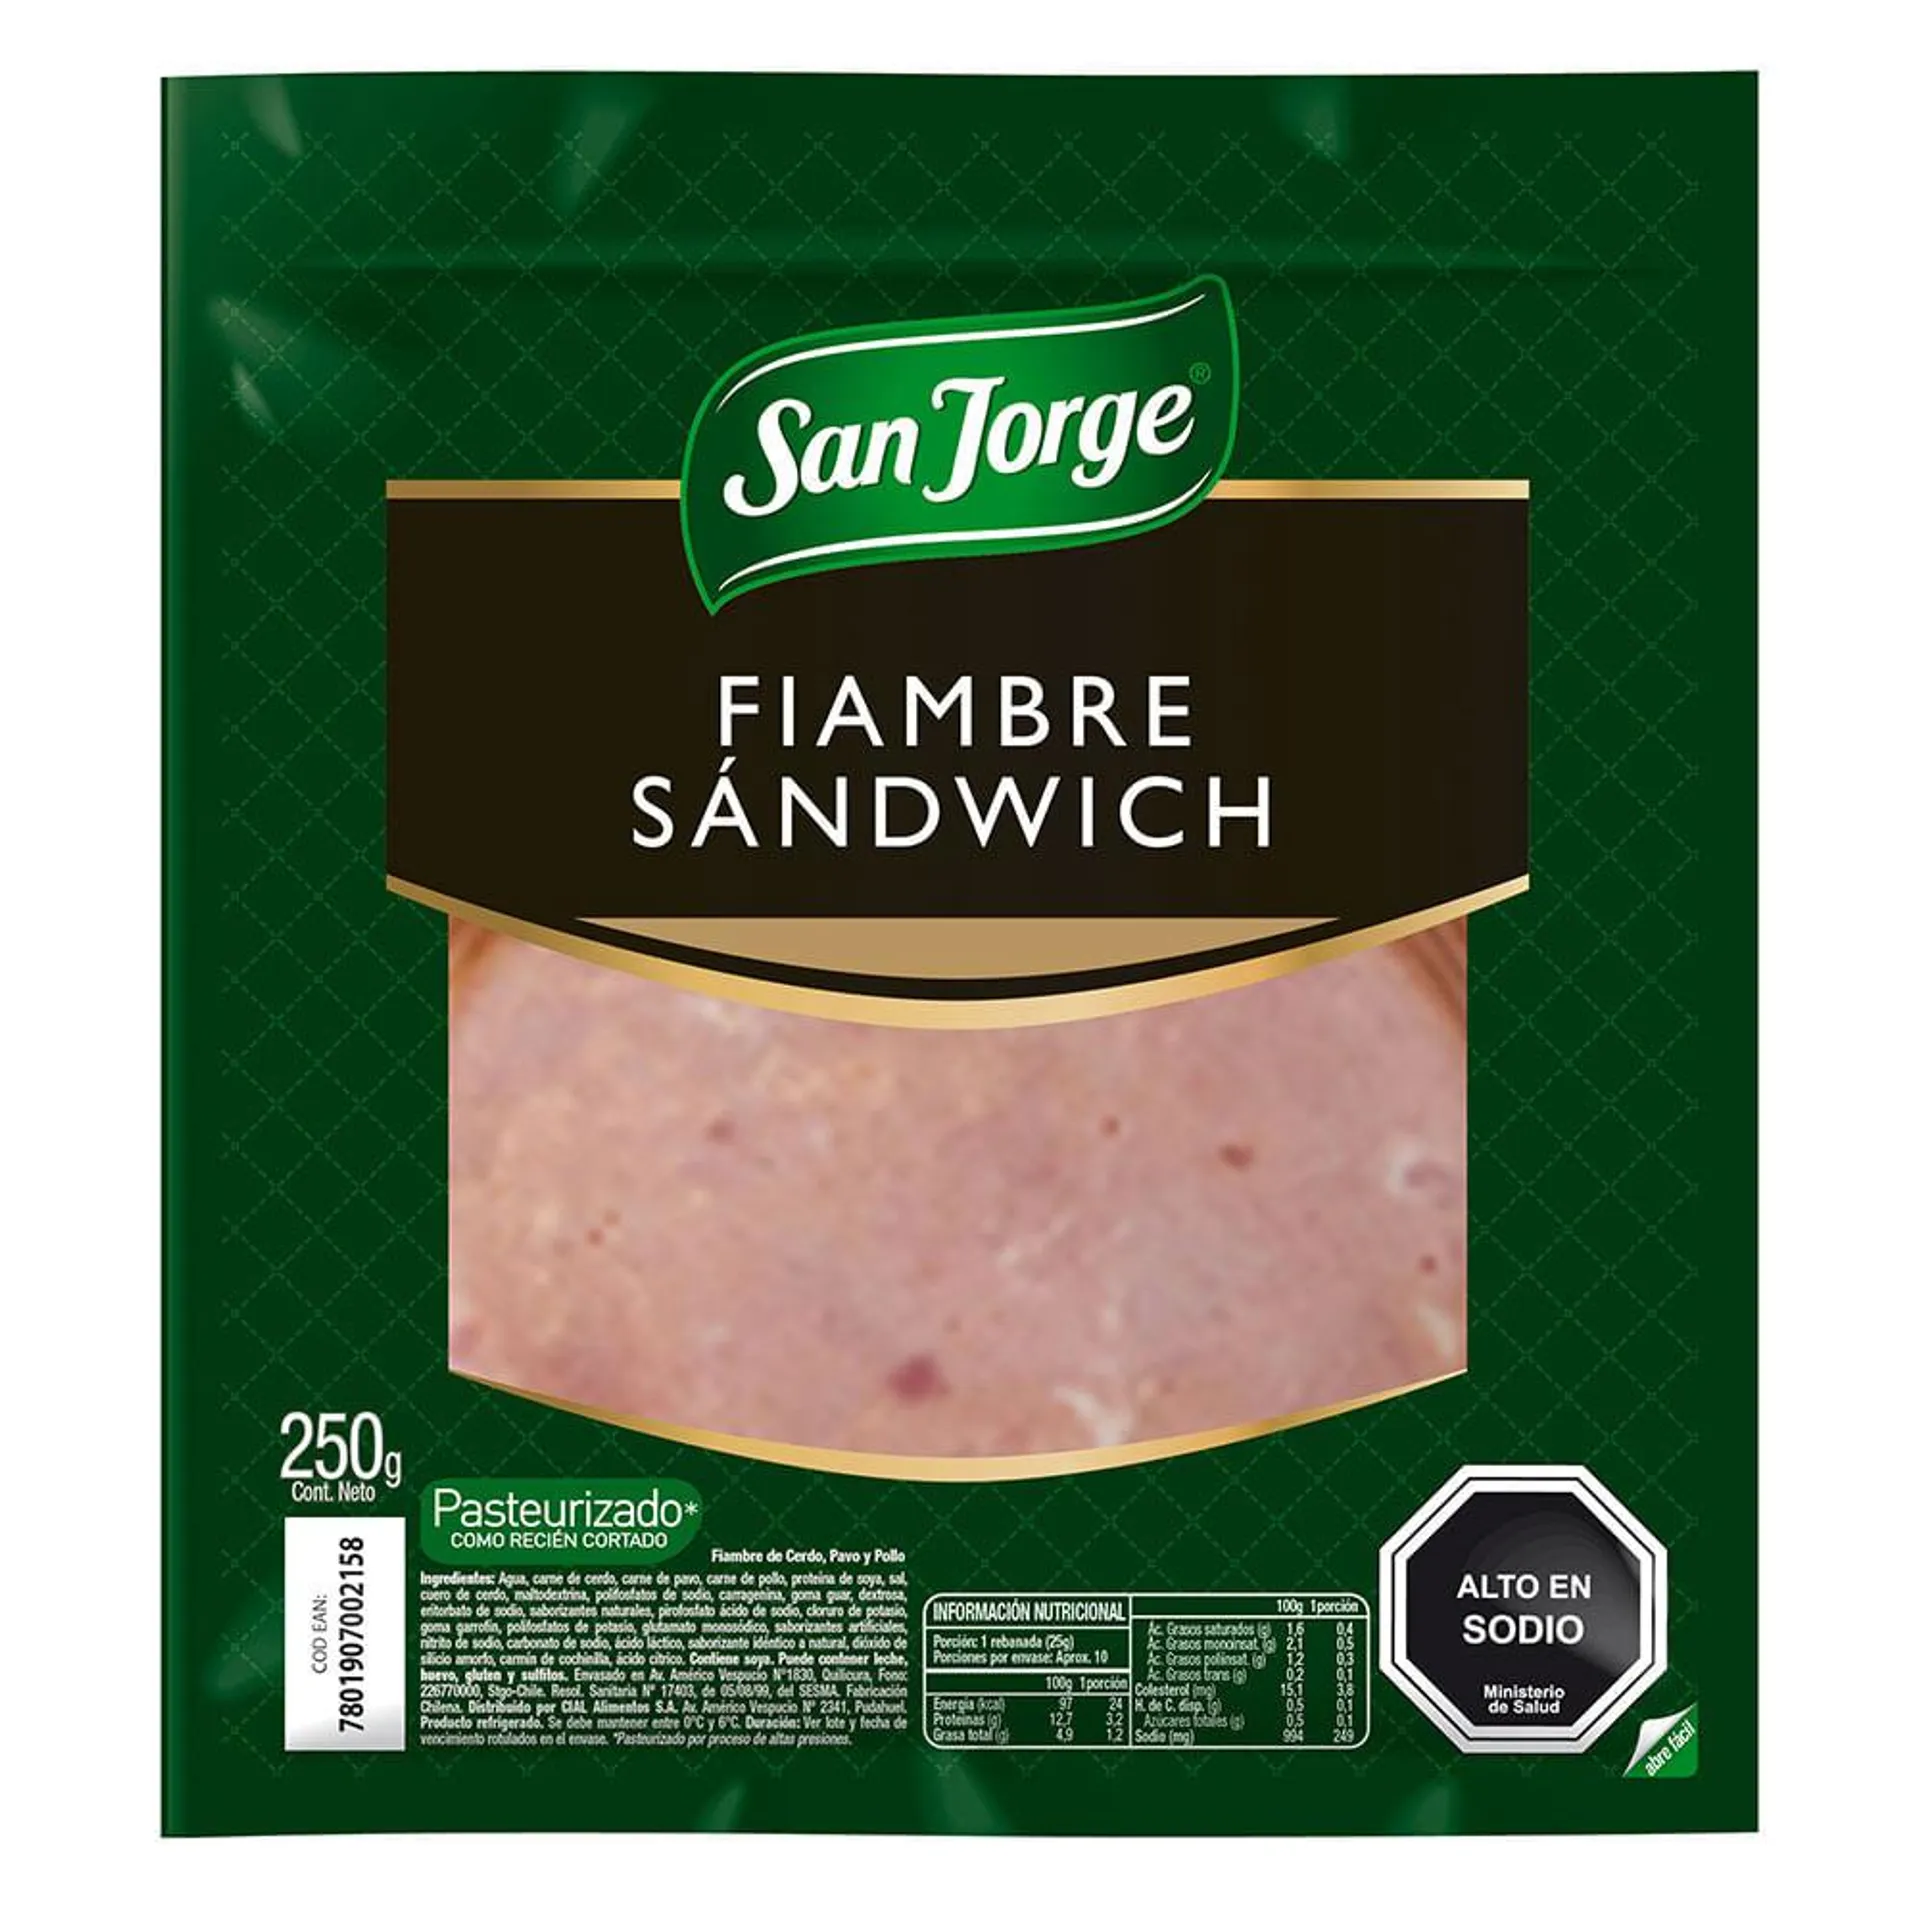 Fiambre sandwich San Jorge 250 g